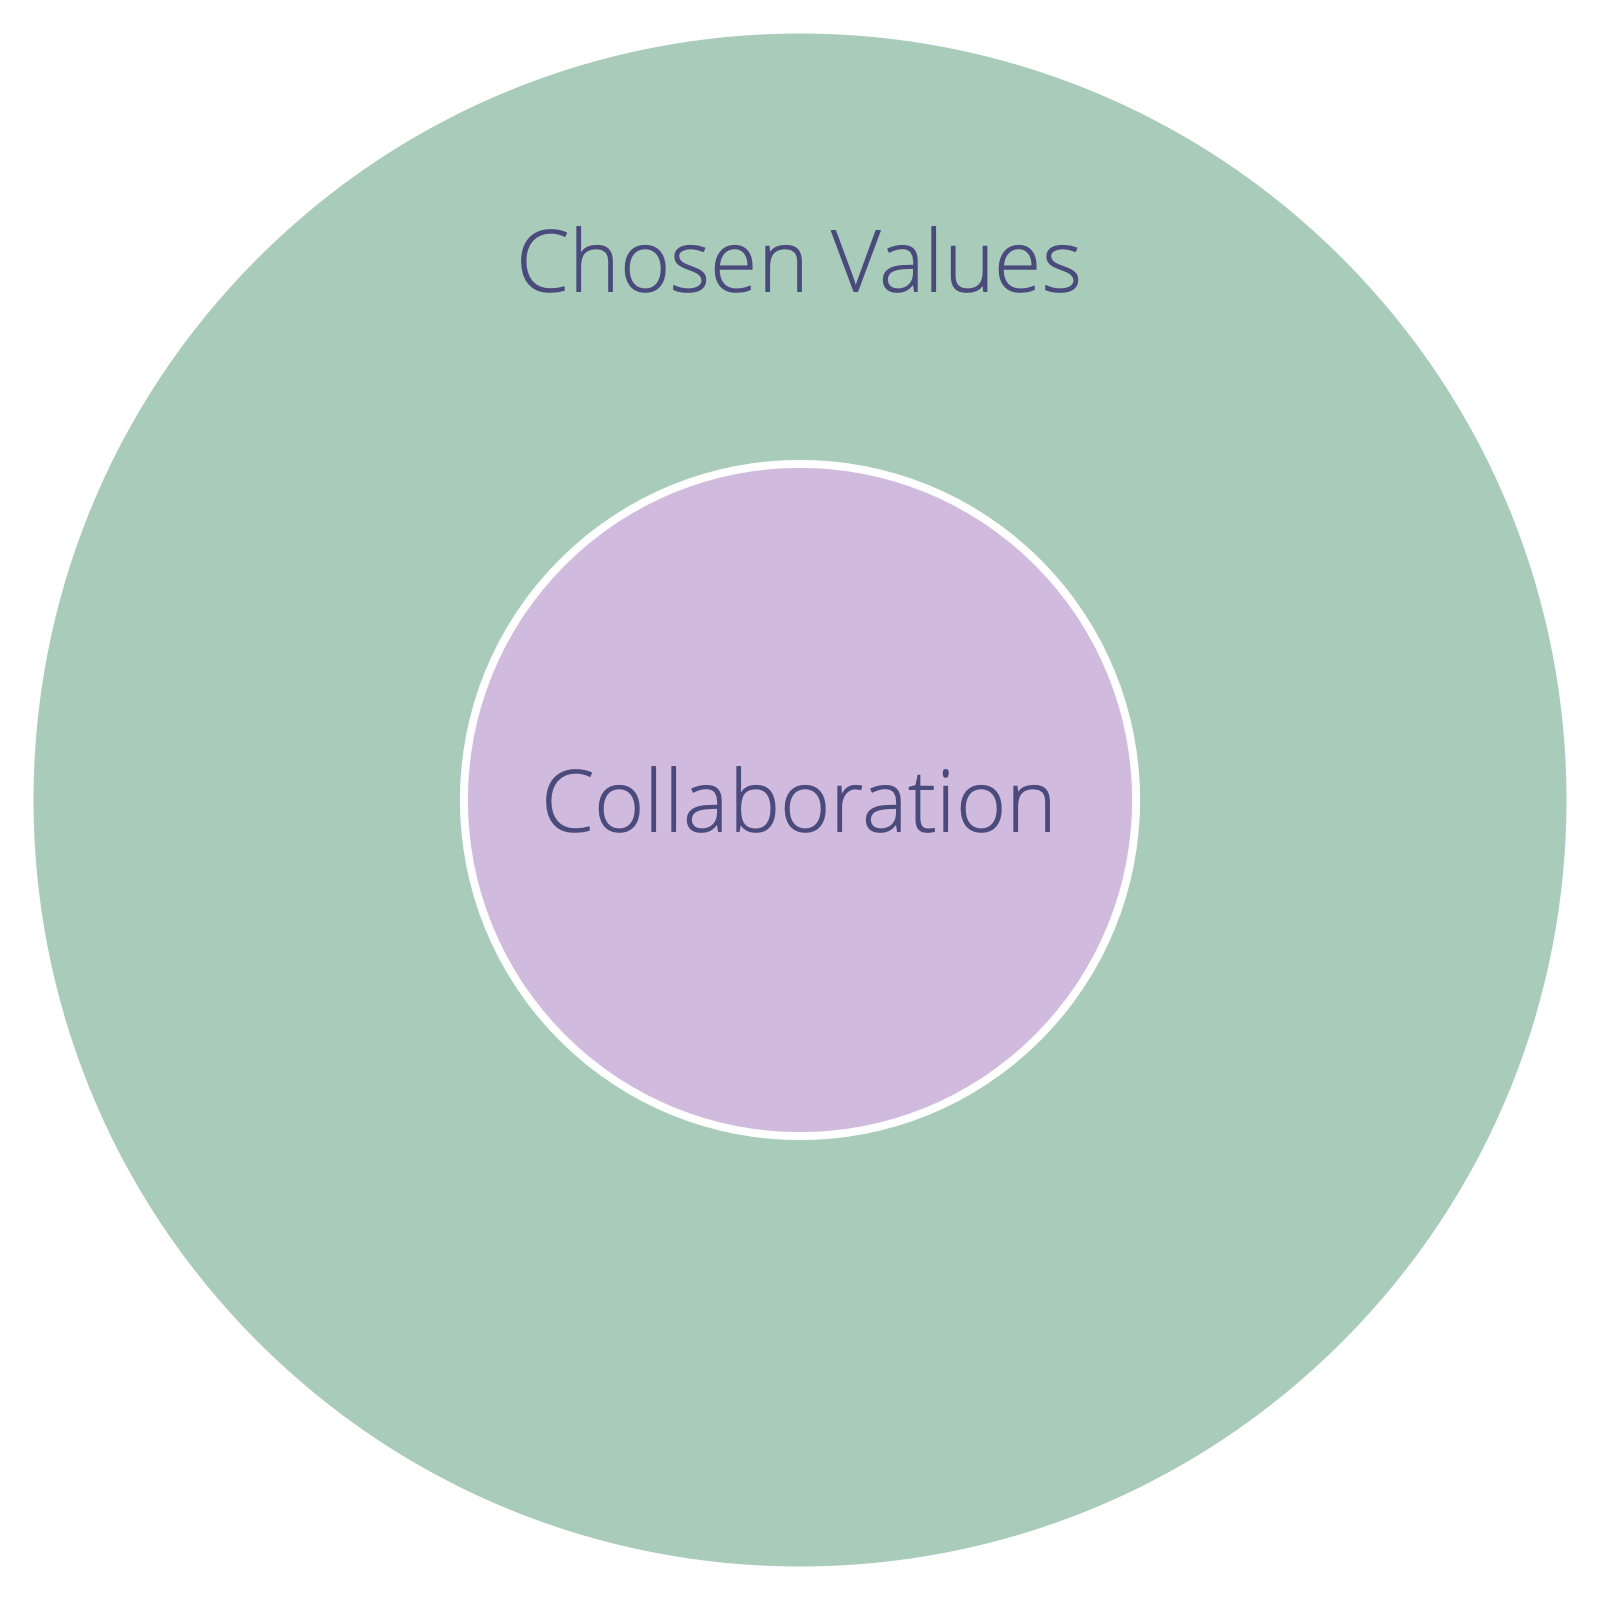 Chosen values define constraints for collaboration